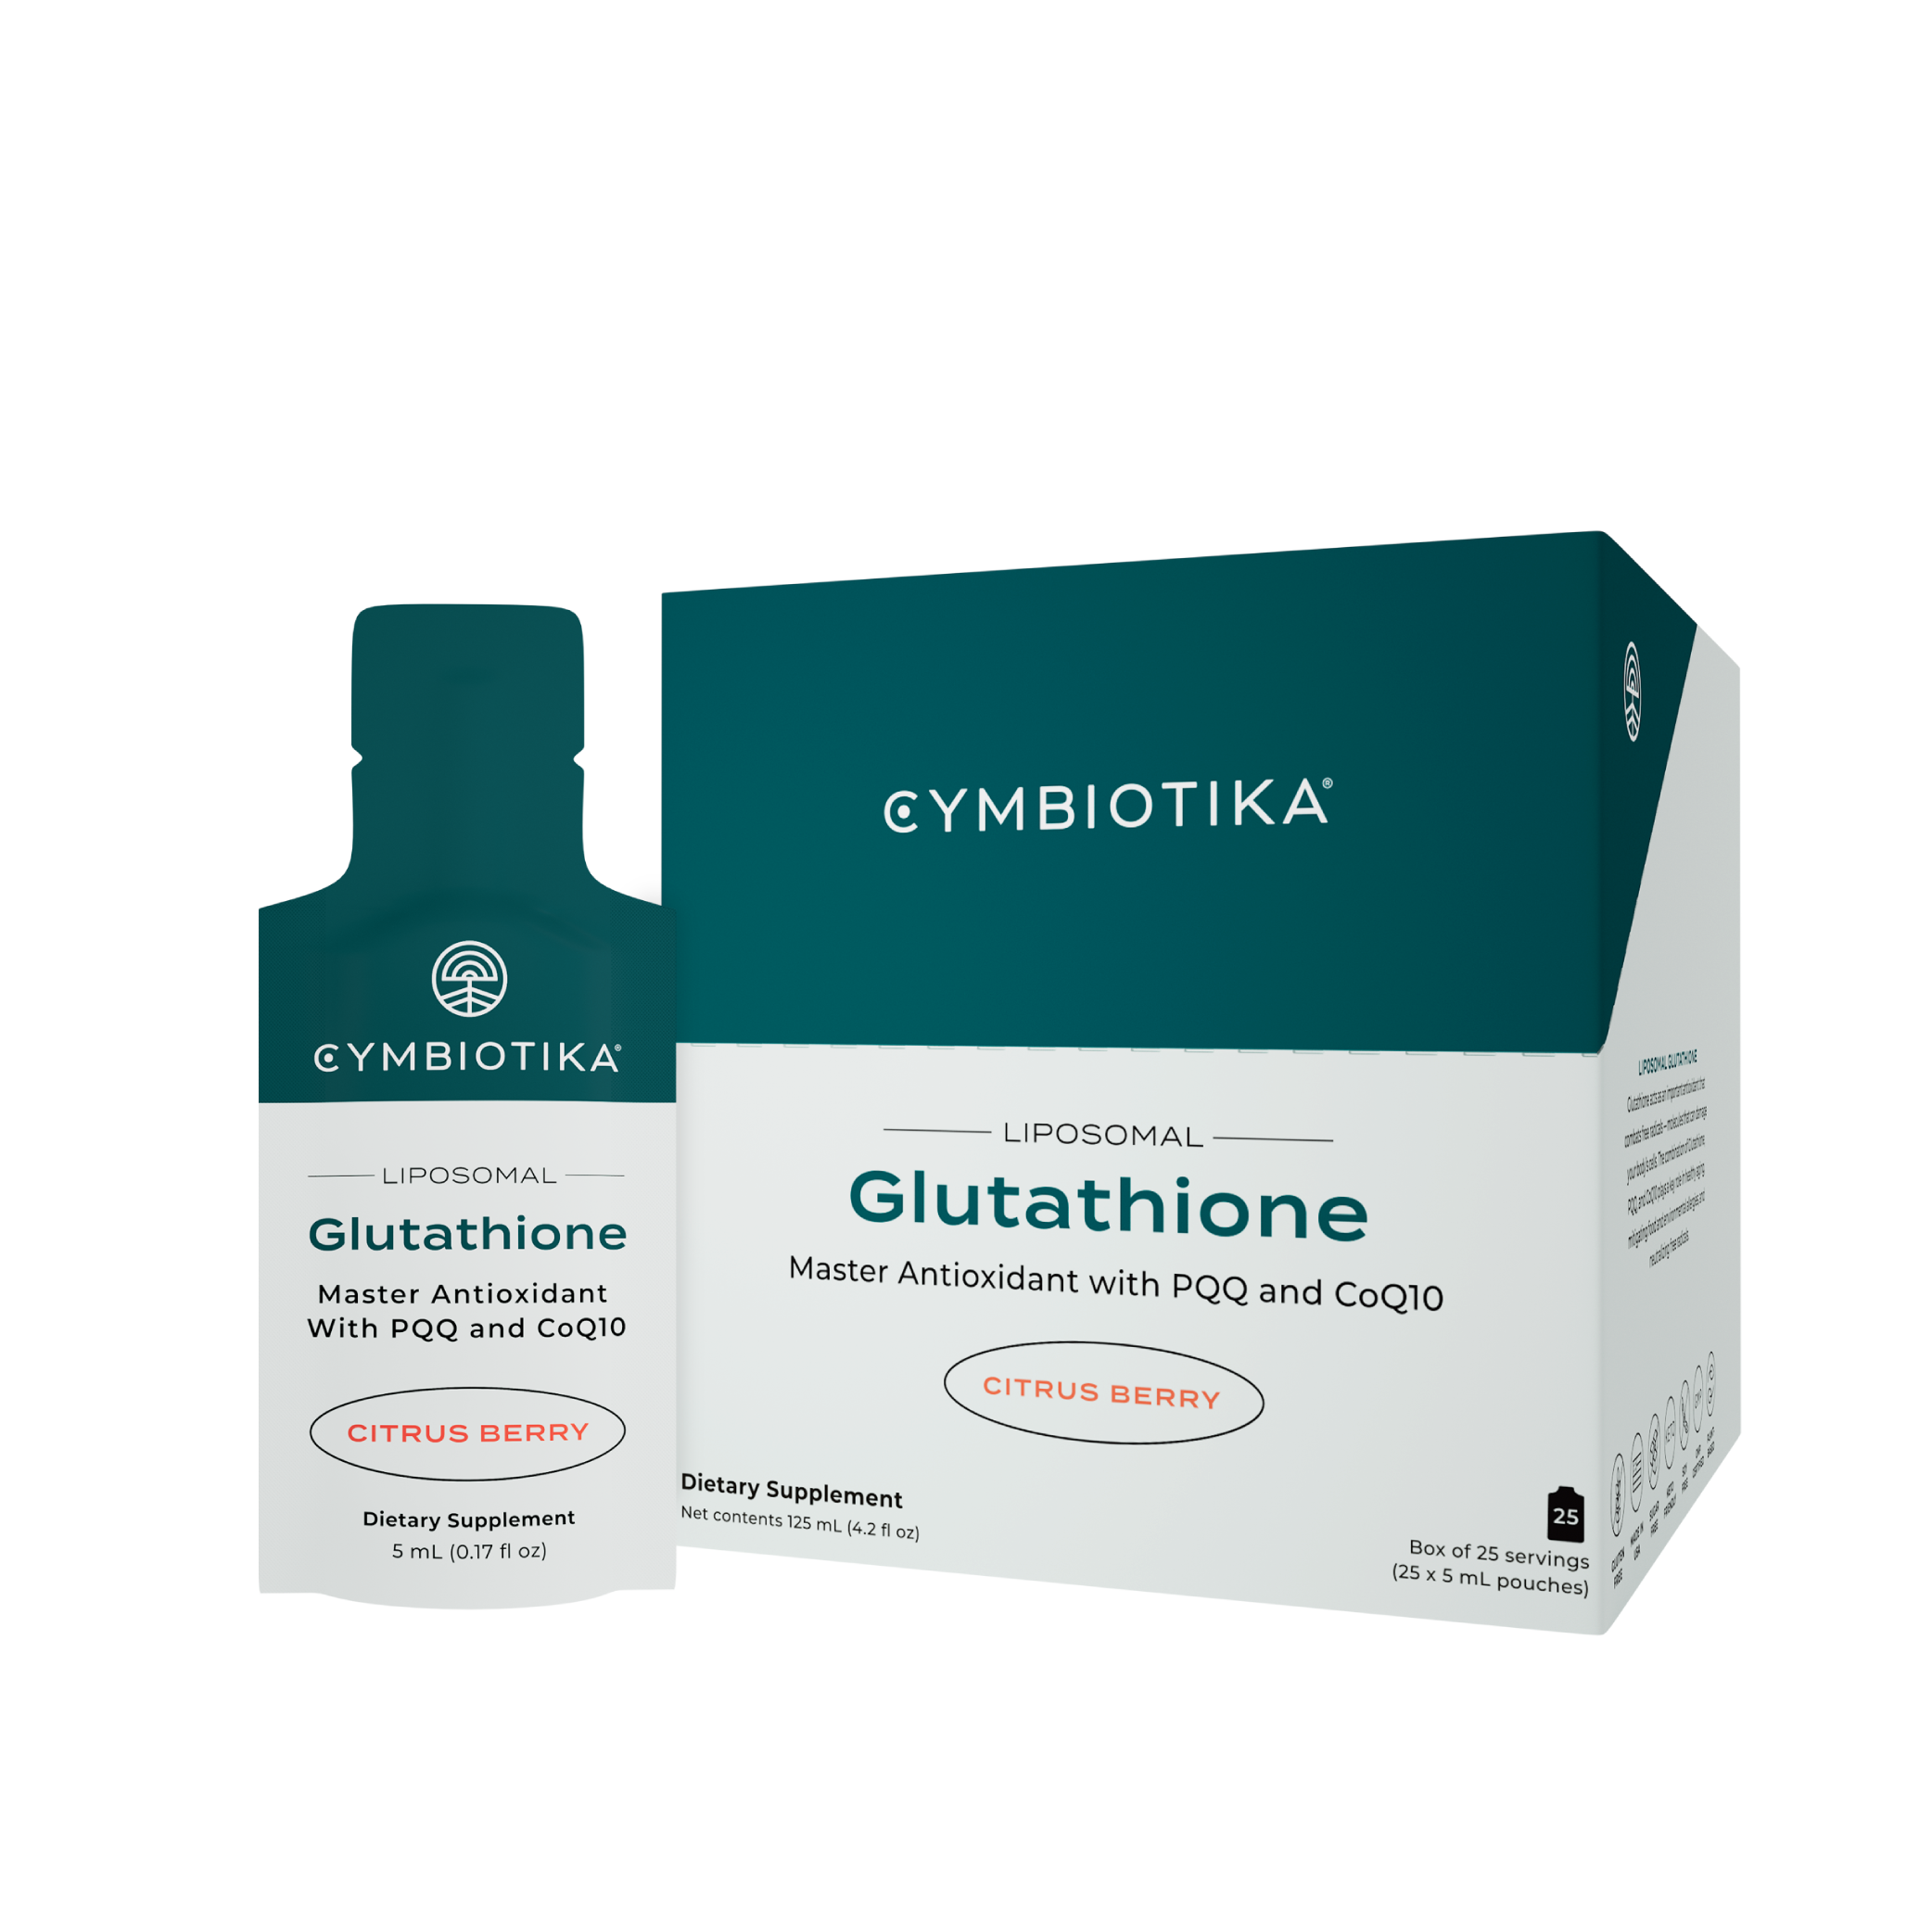 Liposomal Glutathione Pouch and Box